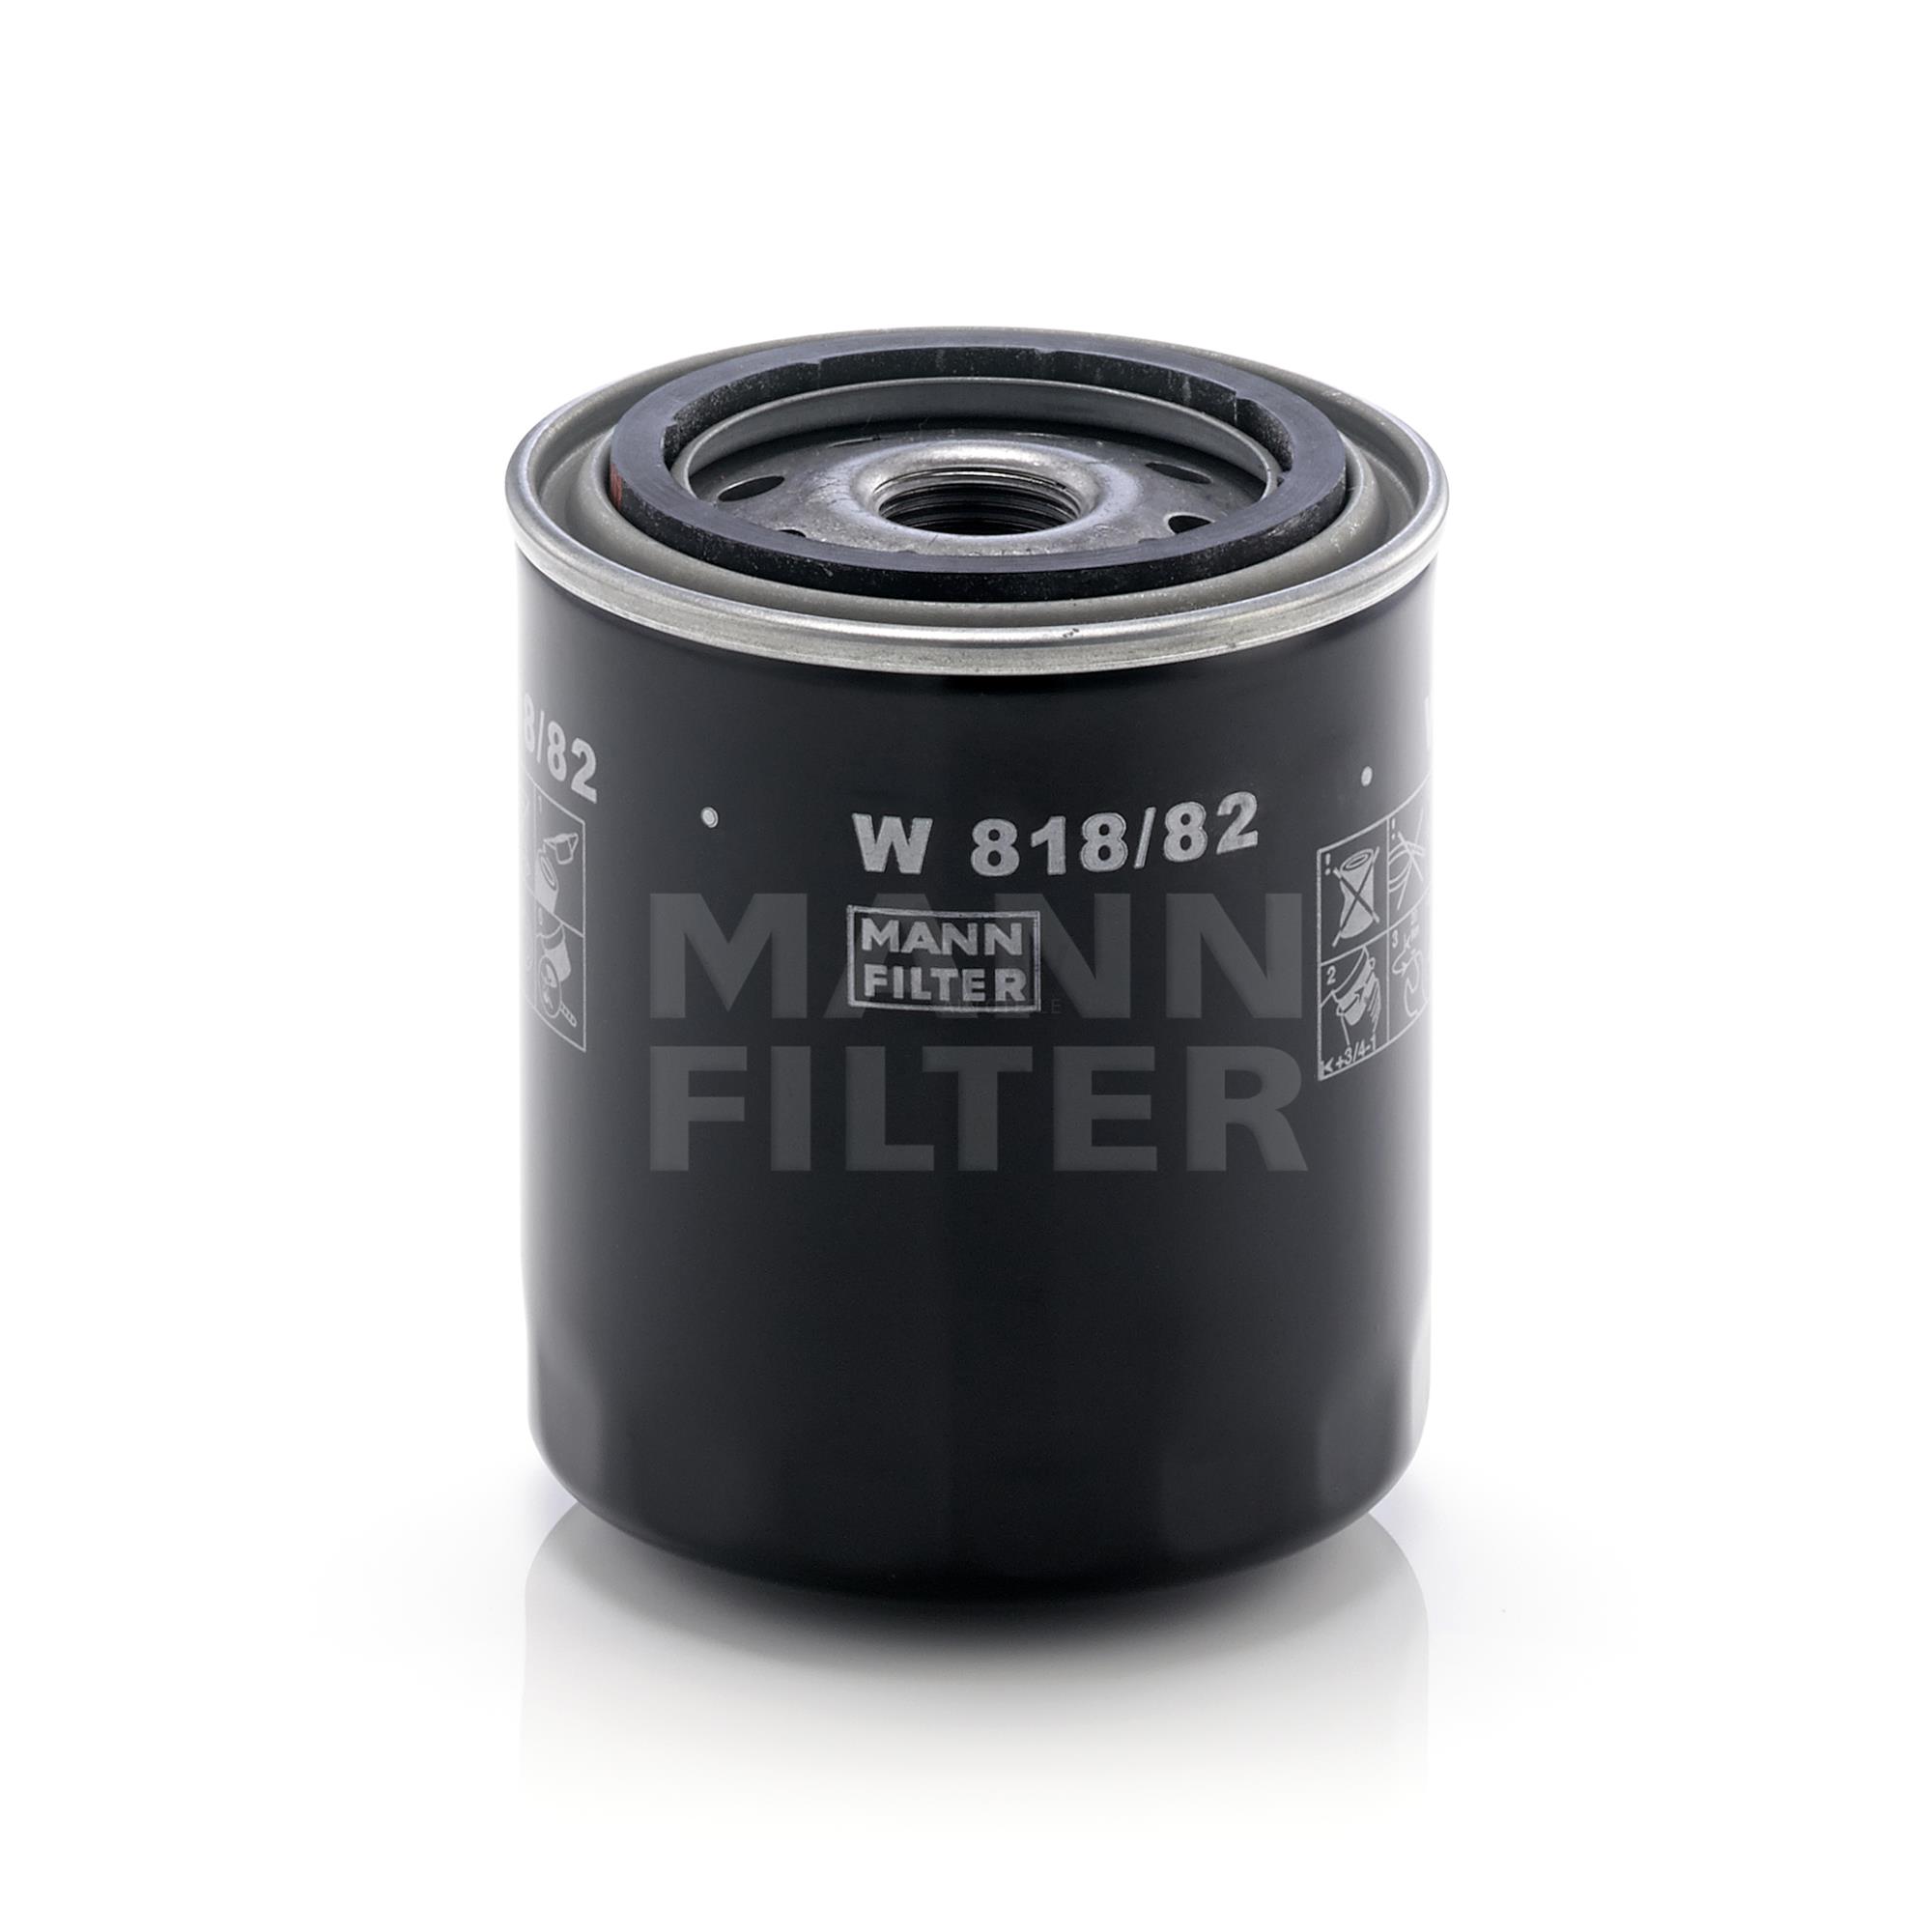 MANN-FILTER Ölfilter W 818/82 Oil Filter